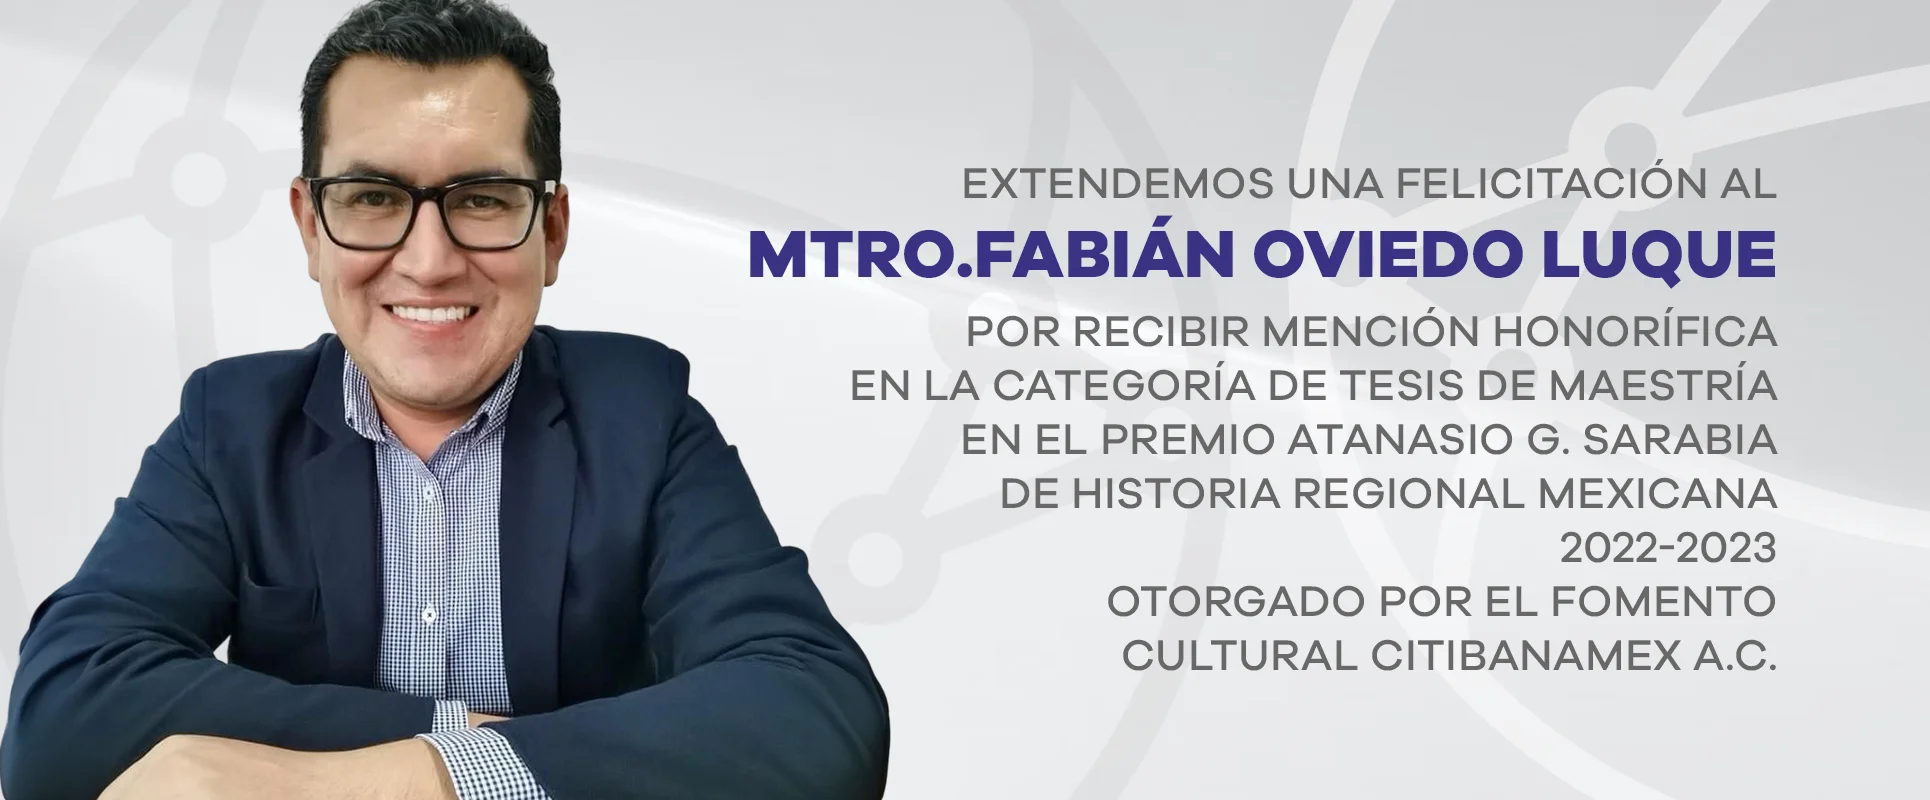 Extendemos una felicitación al Mtro.Fabián Oviedo Luque